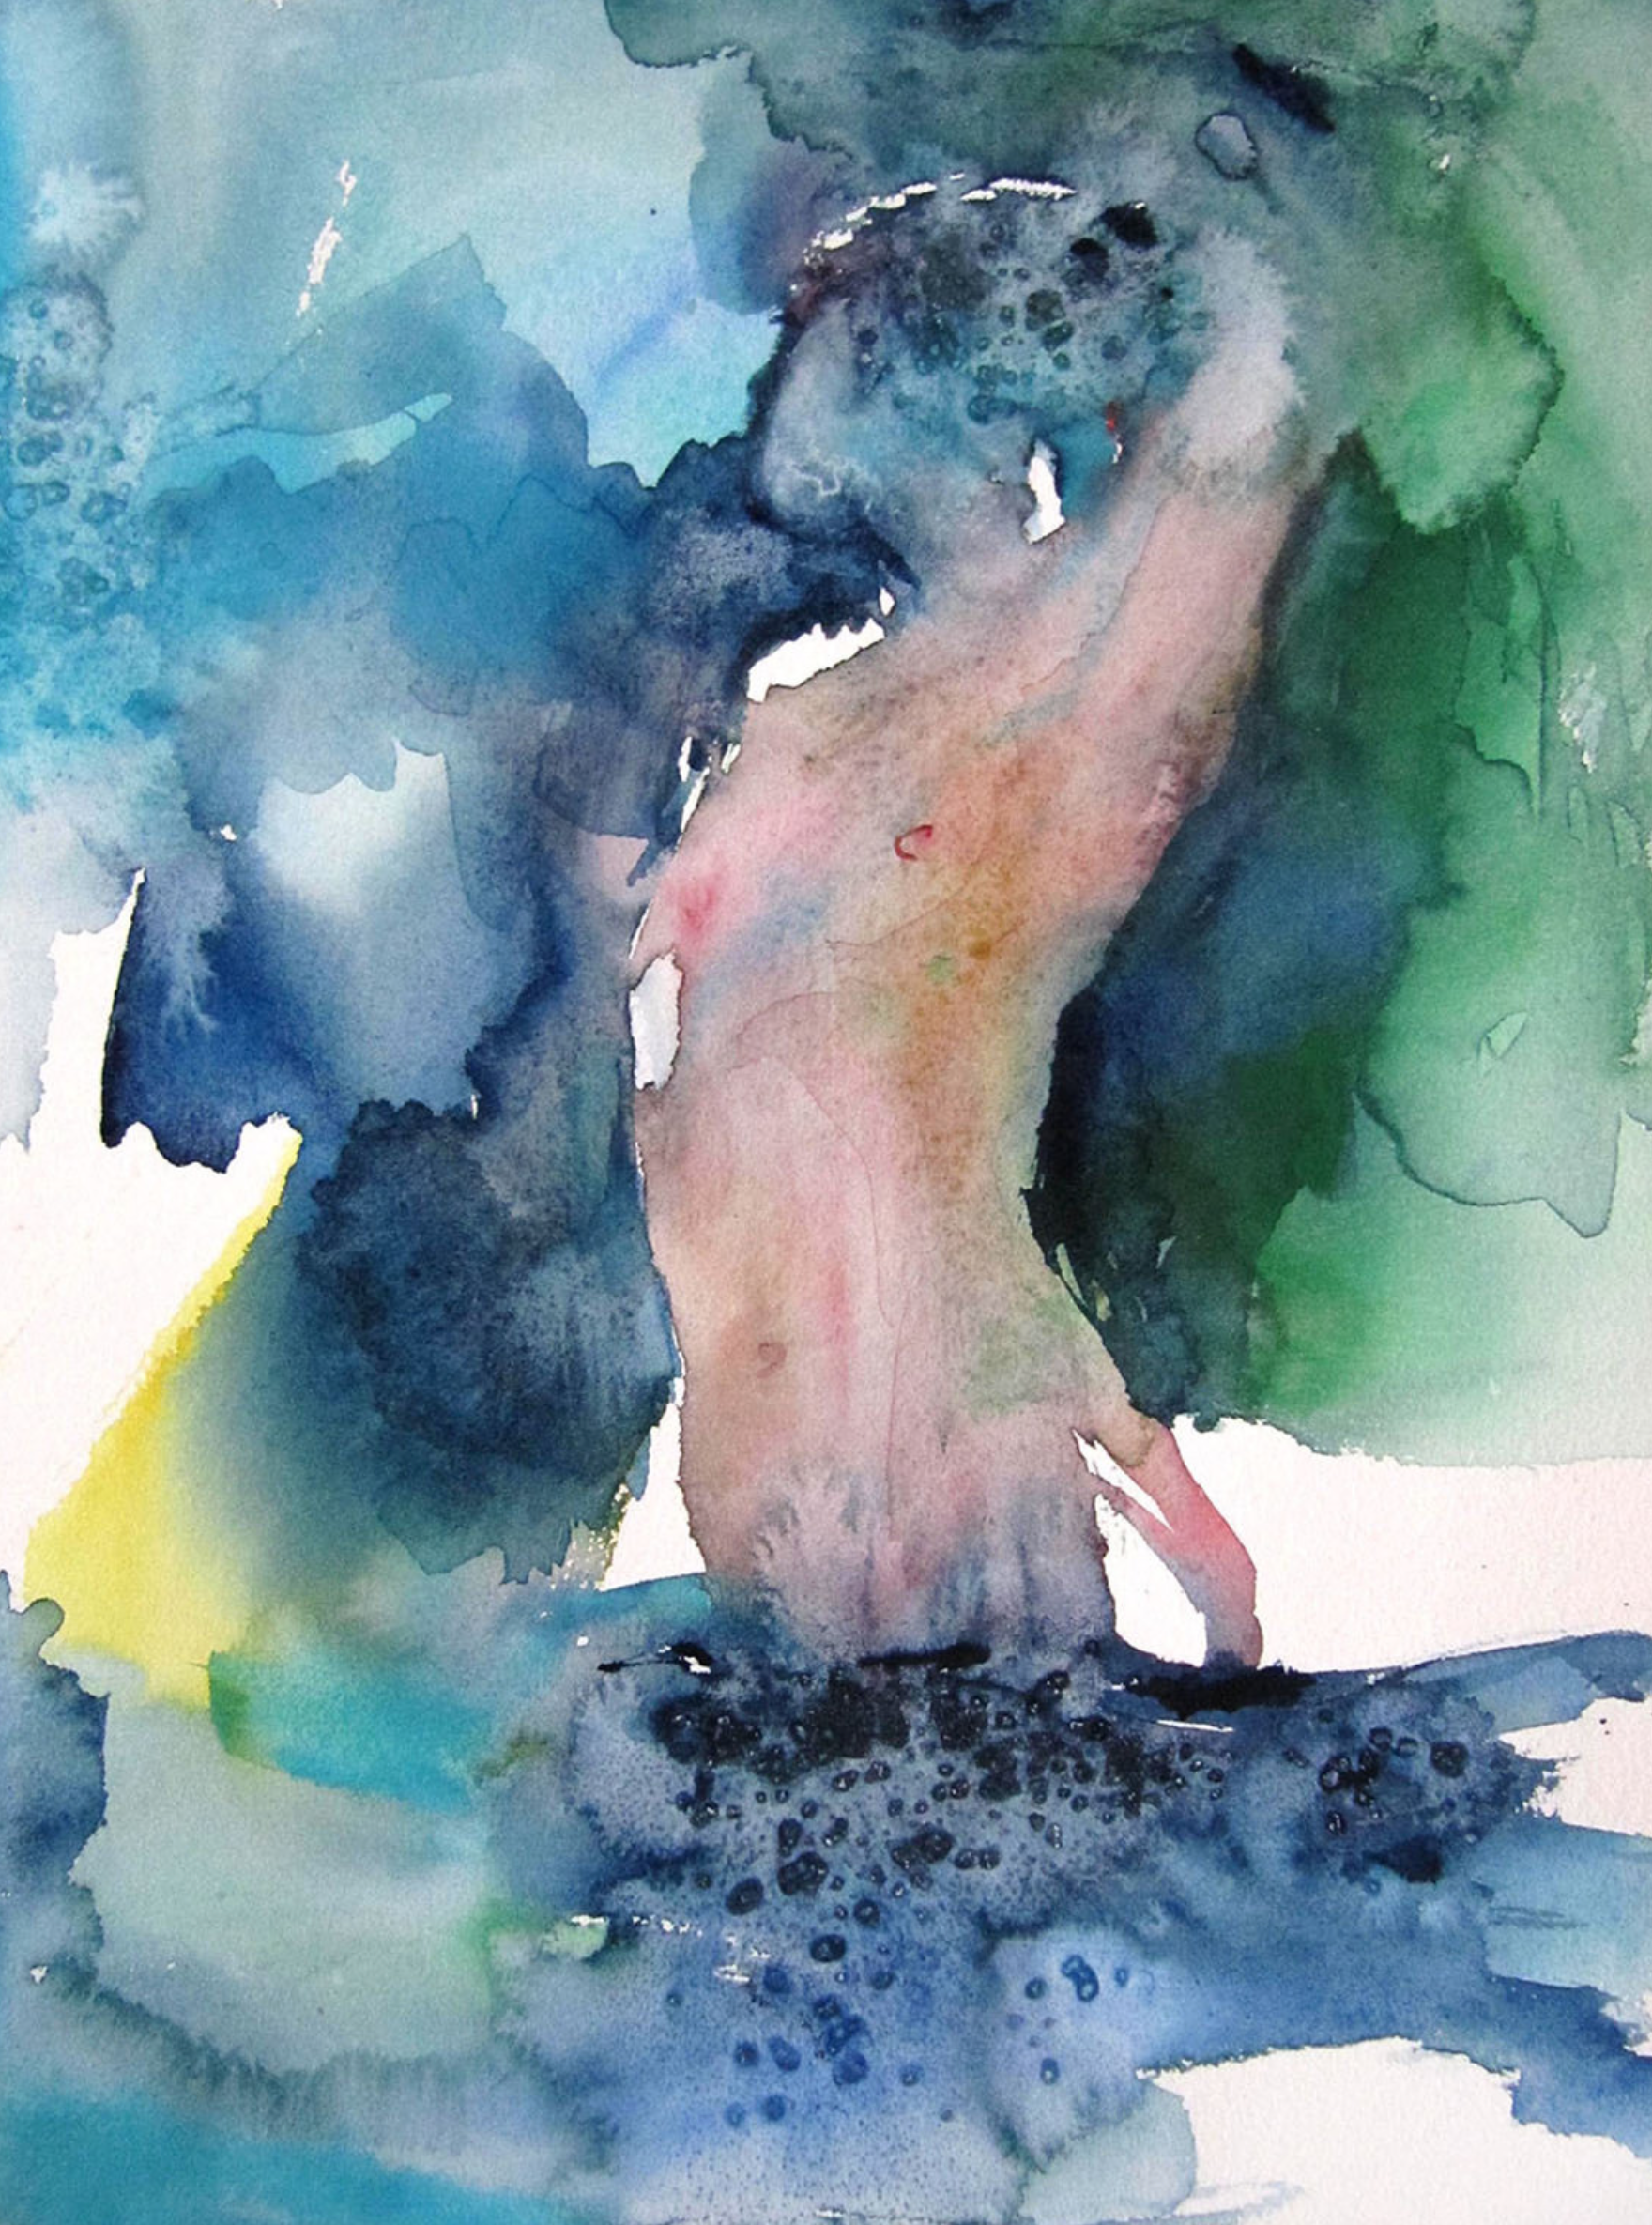 L'opera "Dans la source" di Sylvia Baldeva è un dipinto ad acquerello semi-astratto. Sogno, sogno, nudo, corpo, donna, fonte, acqua, espressionismo, acquerello su carta Canson®.